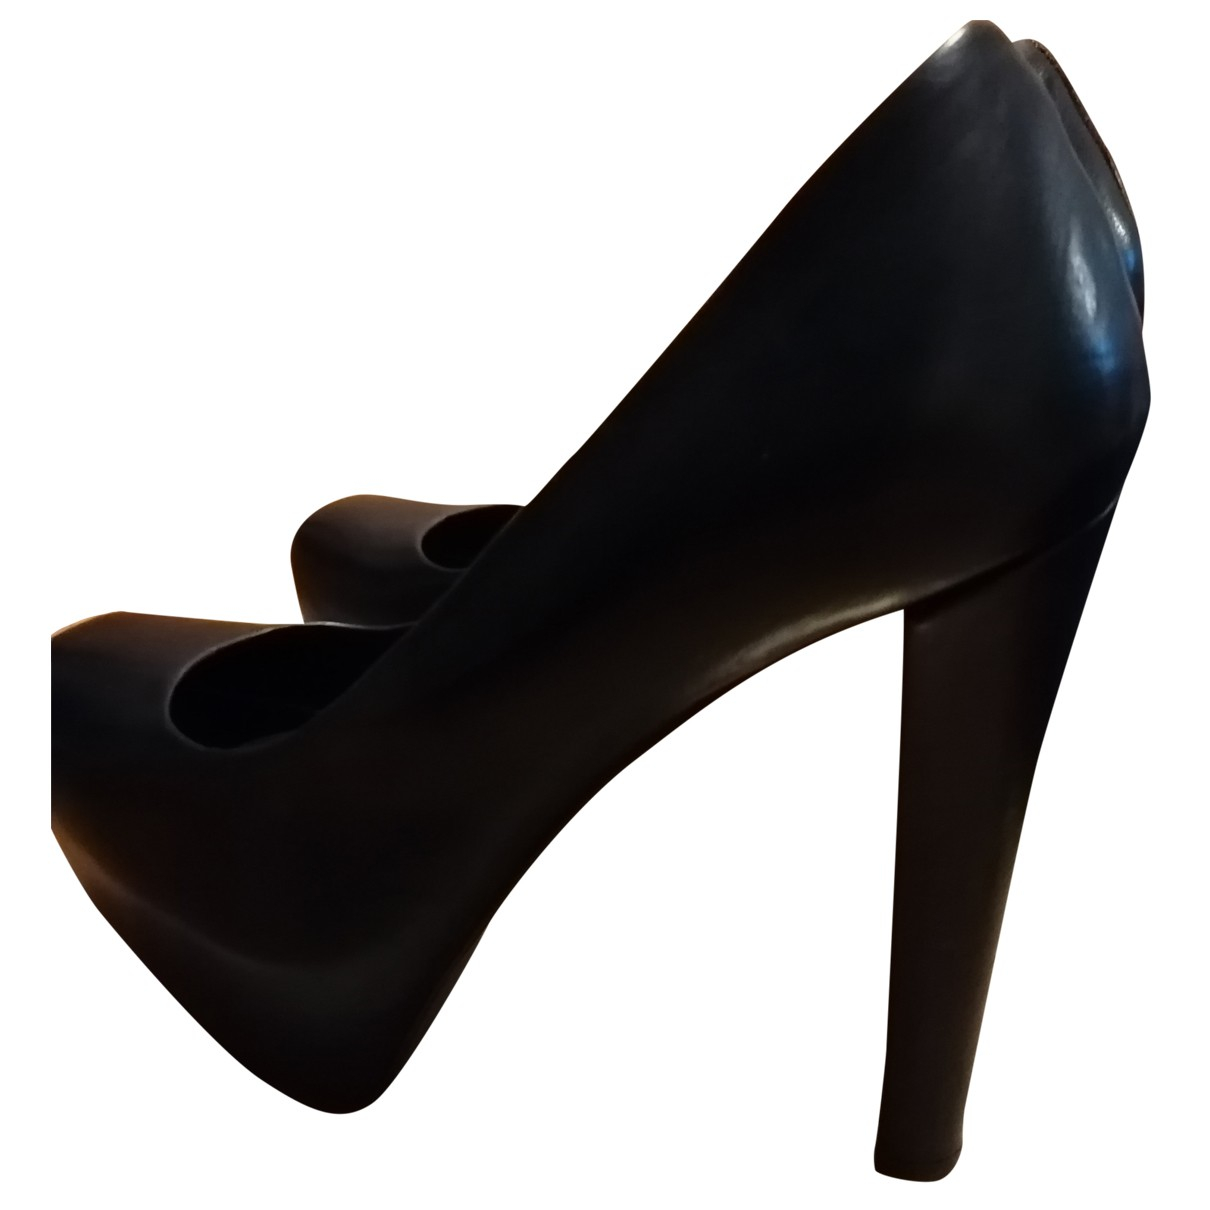 Baldan Leather heels - BALDAN - Modalova